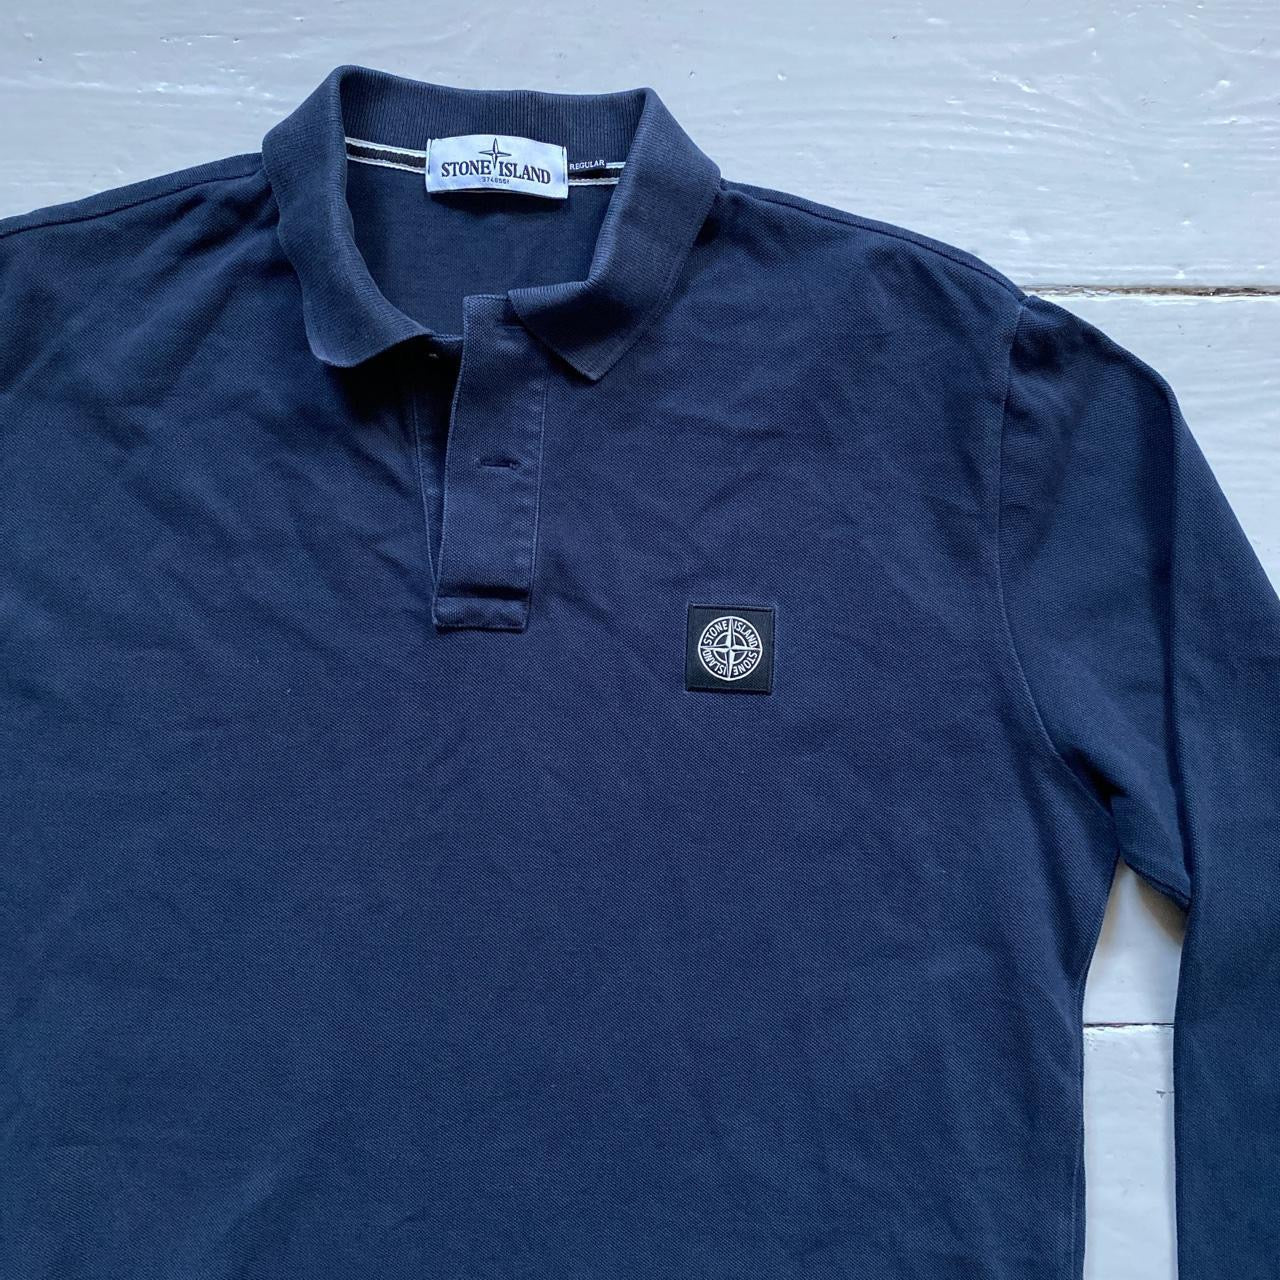 Stone Island Navy Polo Shirt (Large)